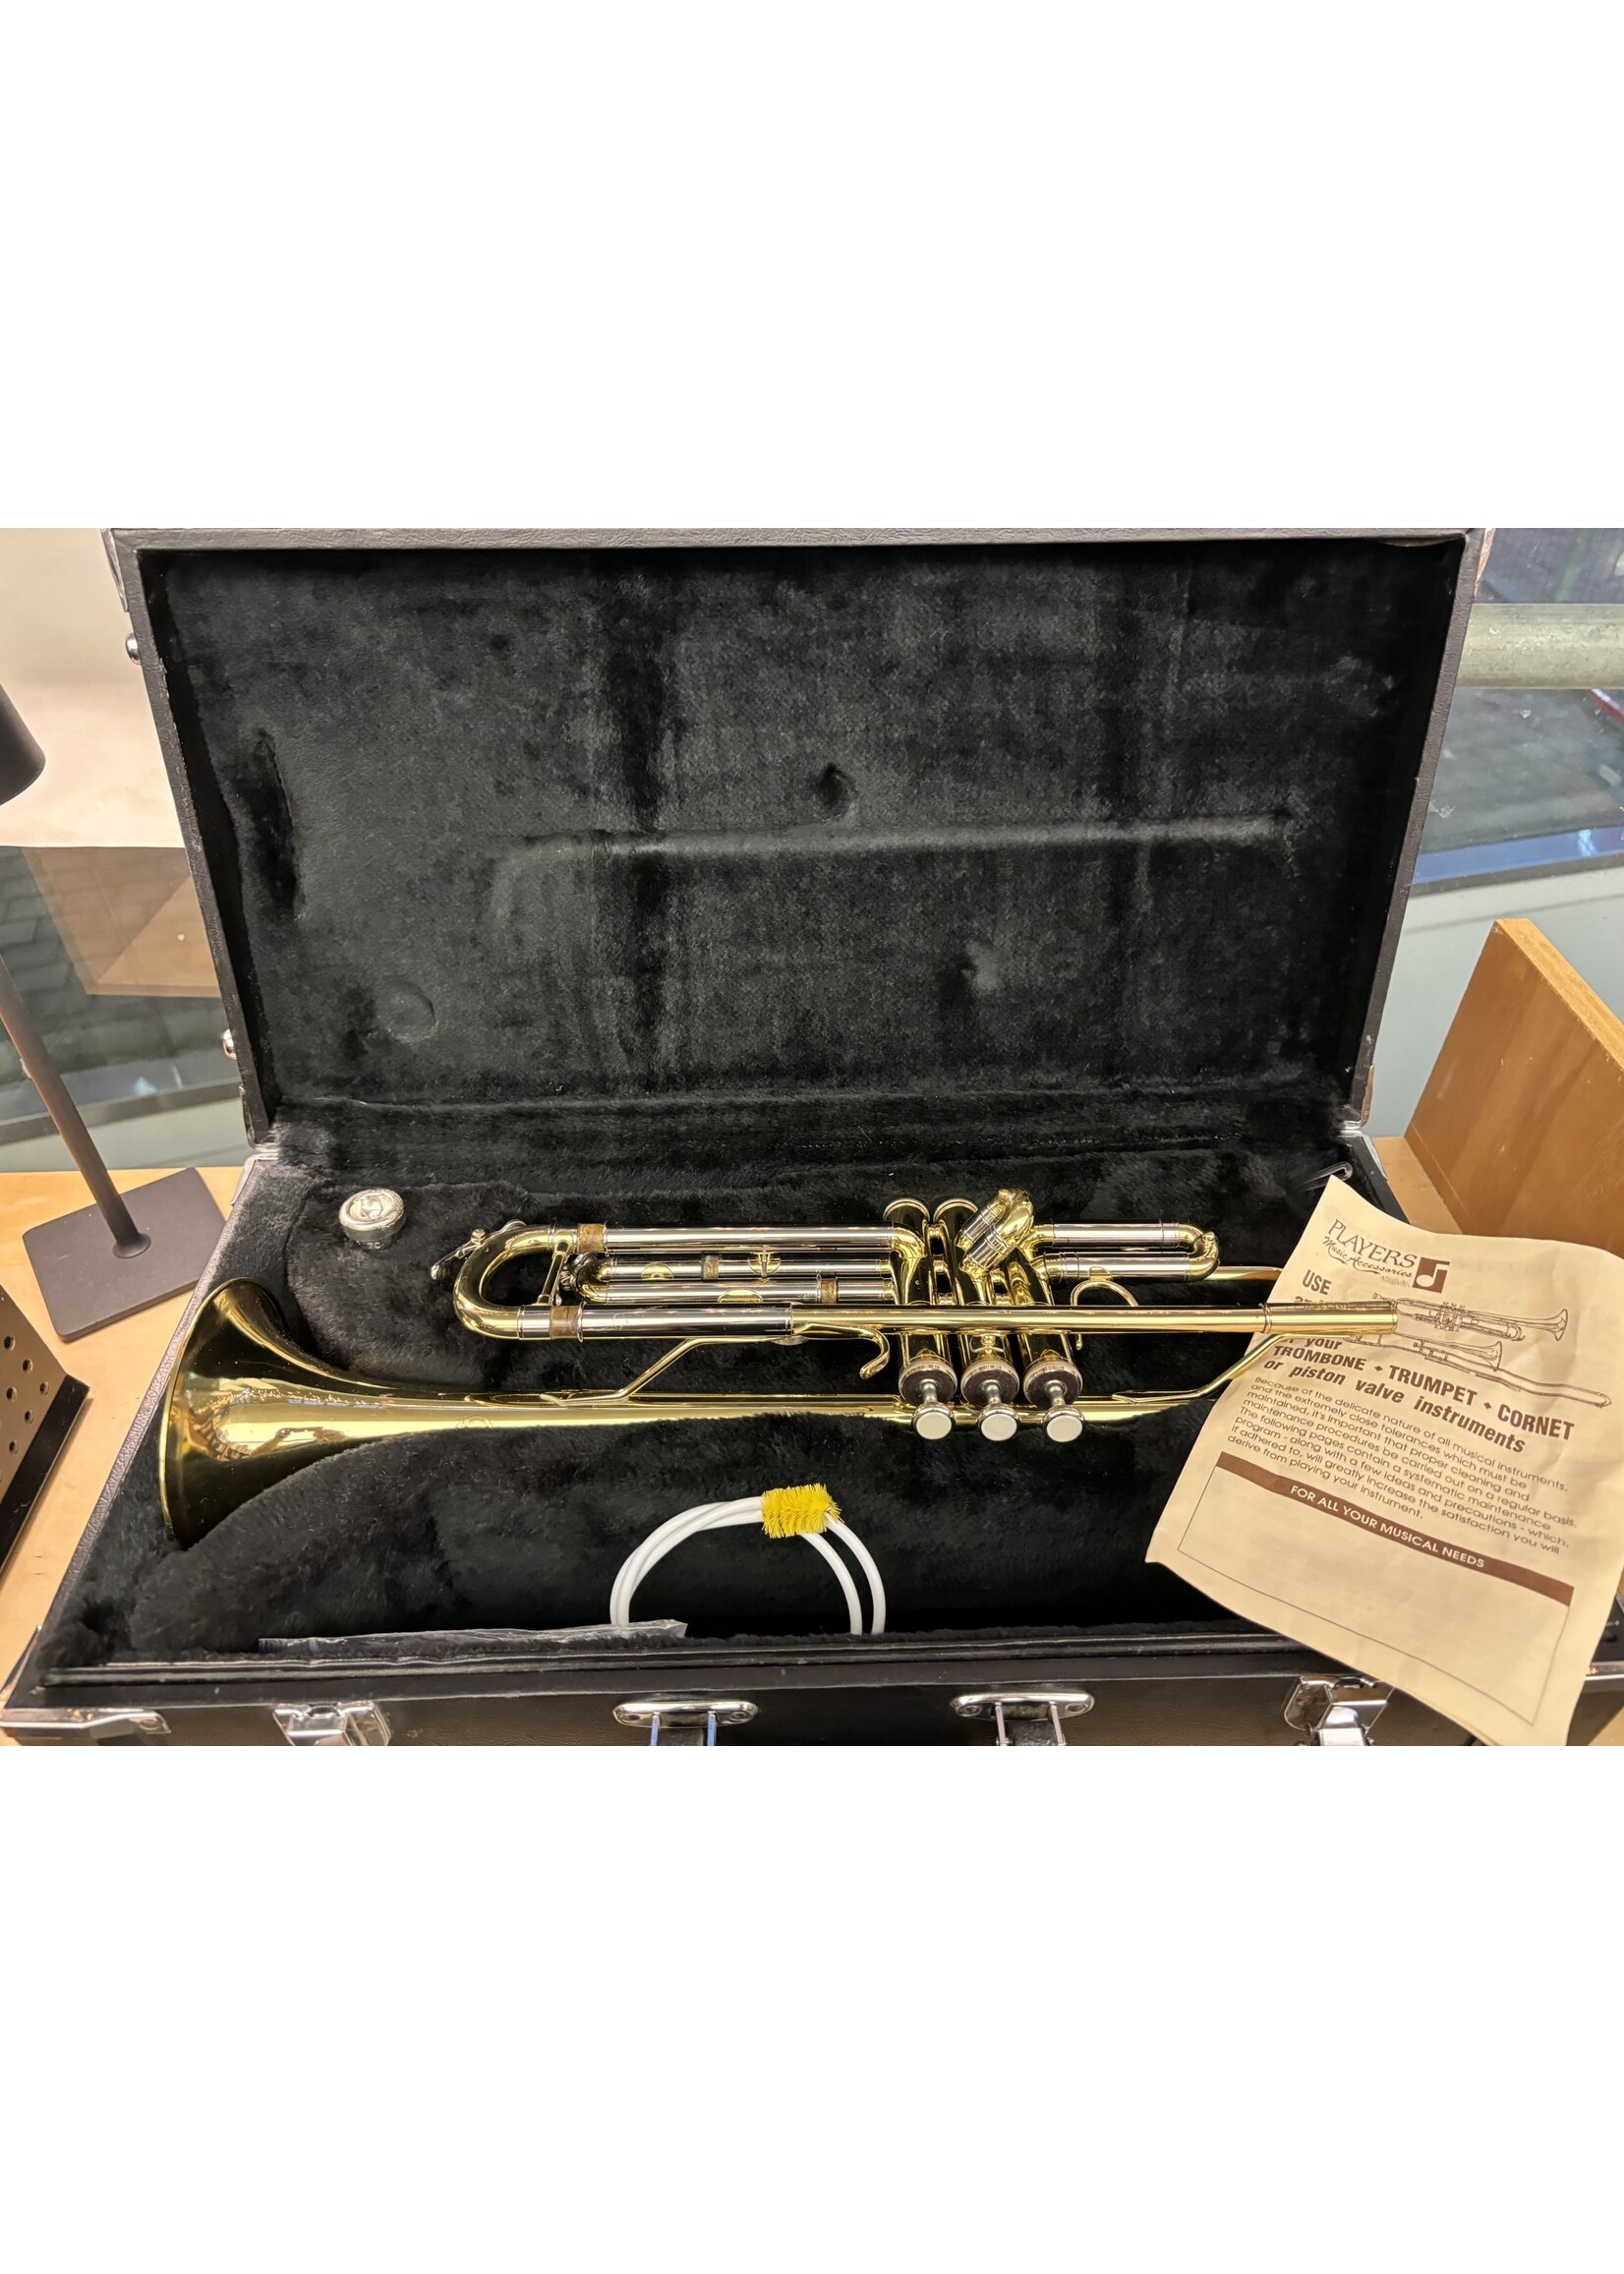 Trumpet JTR 600- Online listing